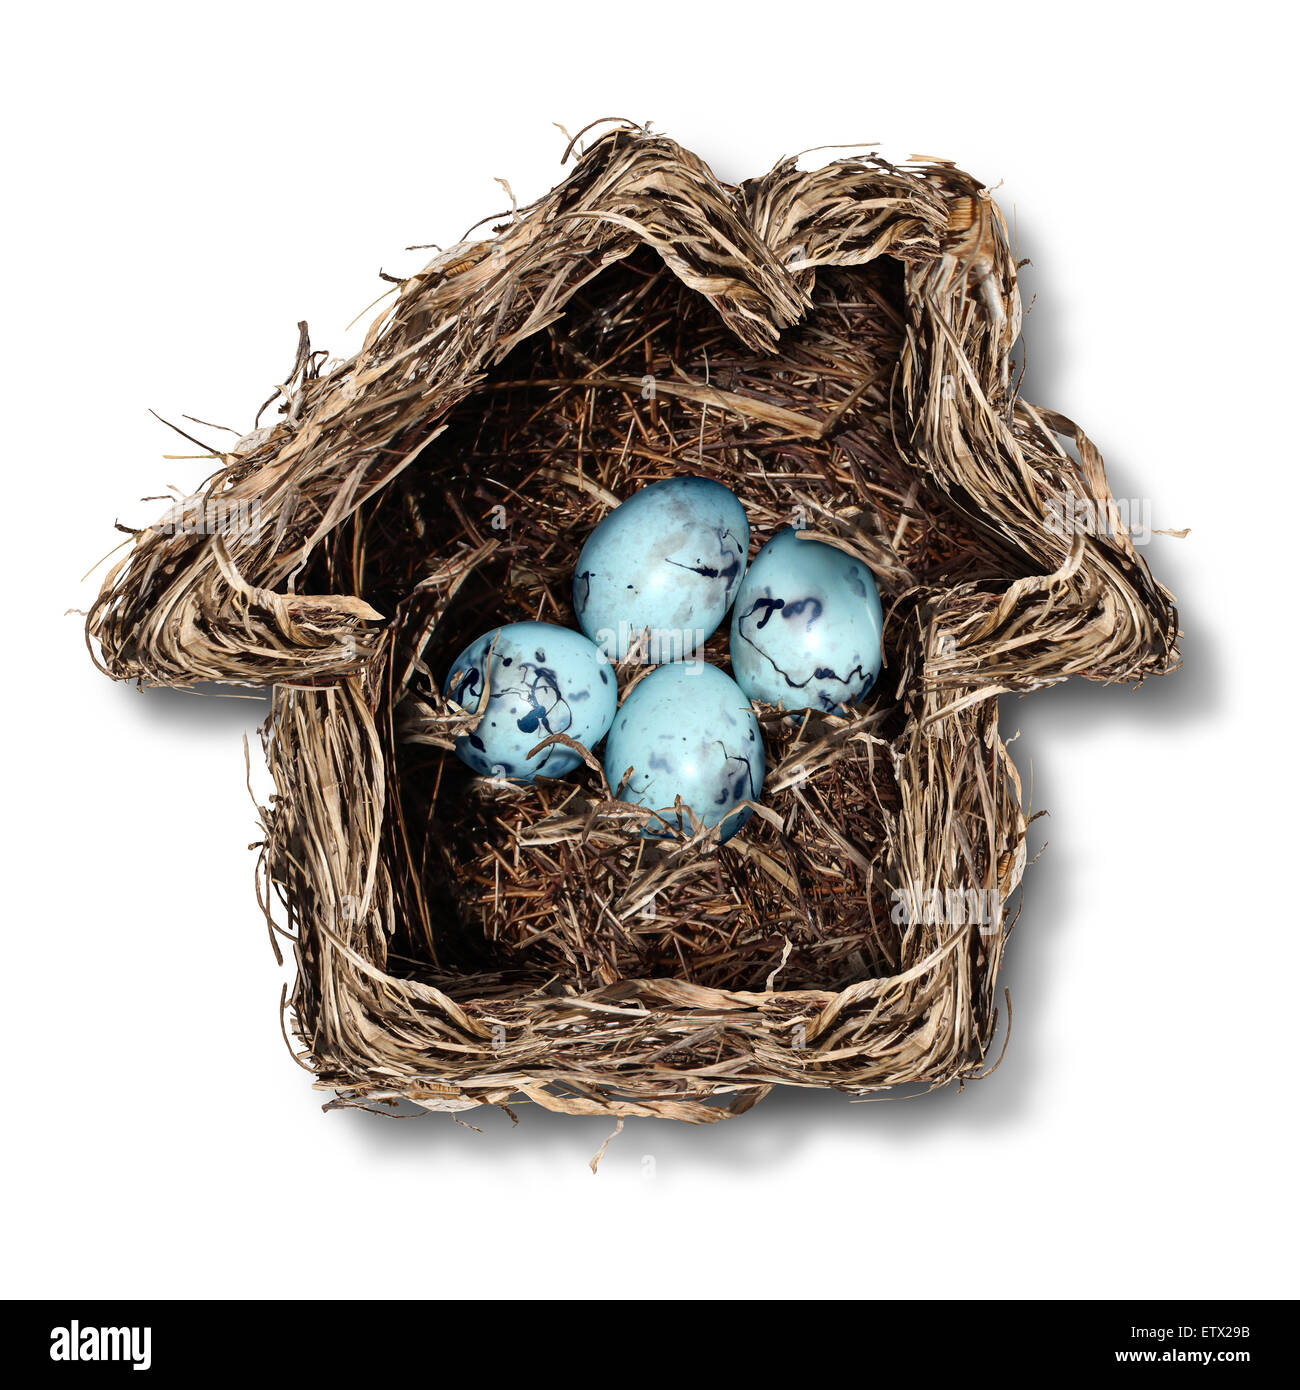 Nach Hause Versicherungskonzept und familiäre Sicherheitssymbol als ein Vogelnest, geformt wie ein Haus mit einer Gruppe zerbrechliche Eier im Inneren als Metapher für den Schutz des Wohnsitzes oder Elternschaft. Stockfoto